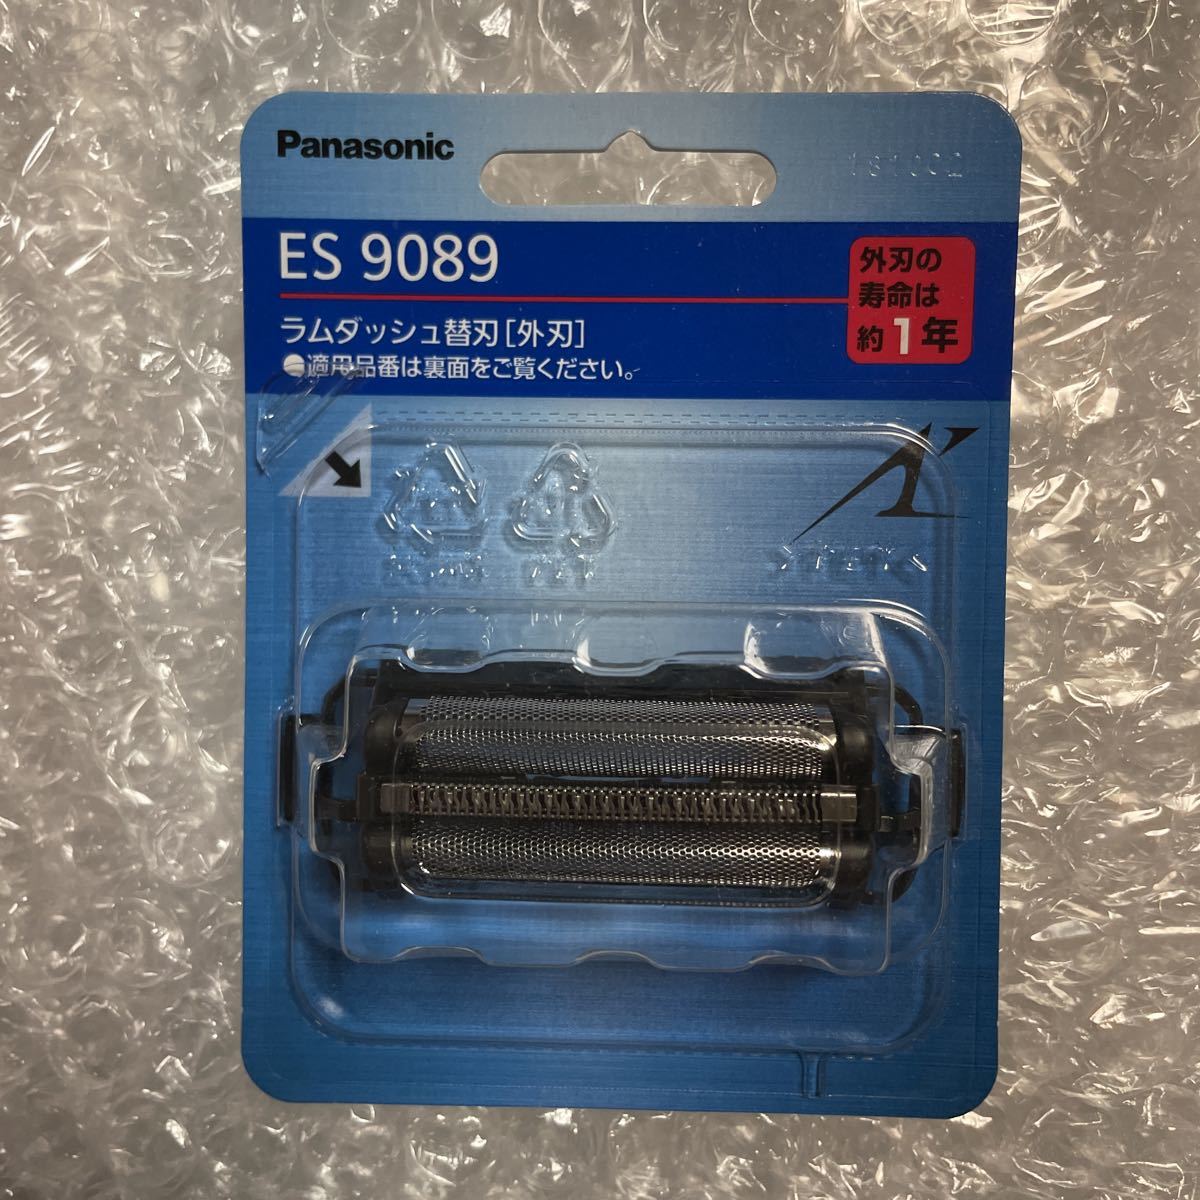 新品 送料無料 Panasonic パナソニック メンズシェーバー ES9089 外刃 替刃 ES 9089 ラムダッシュ